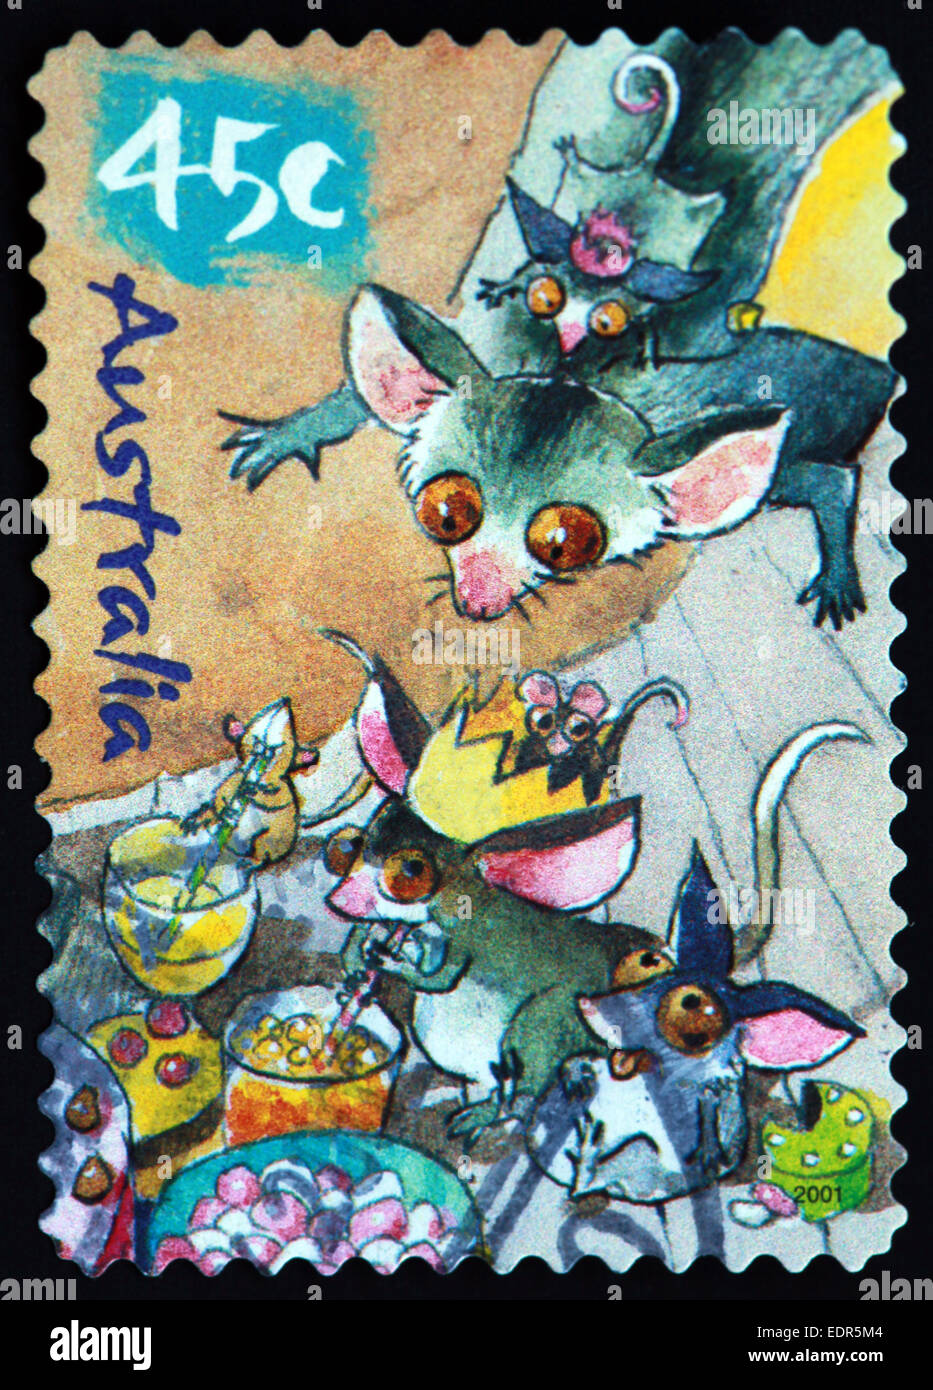 Utilisé et oblitérée Australie / Austrailian Stamp 45 c cartoon souris souris Banque D'Images